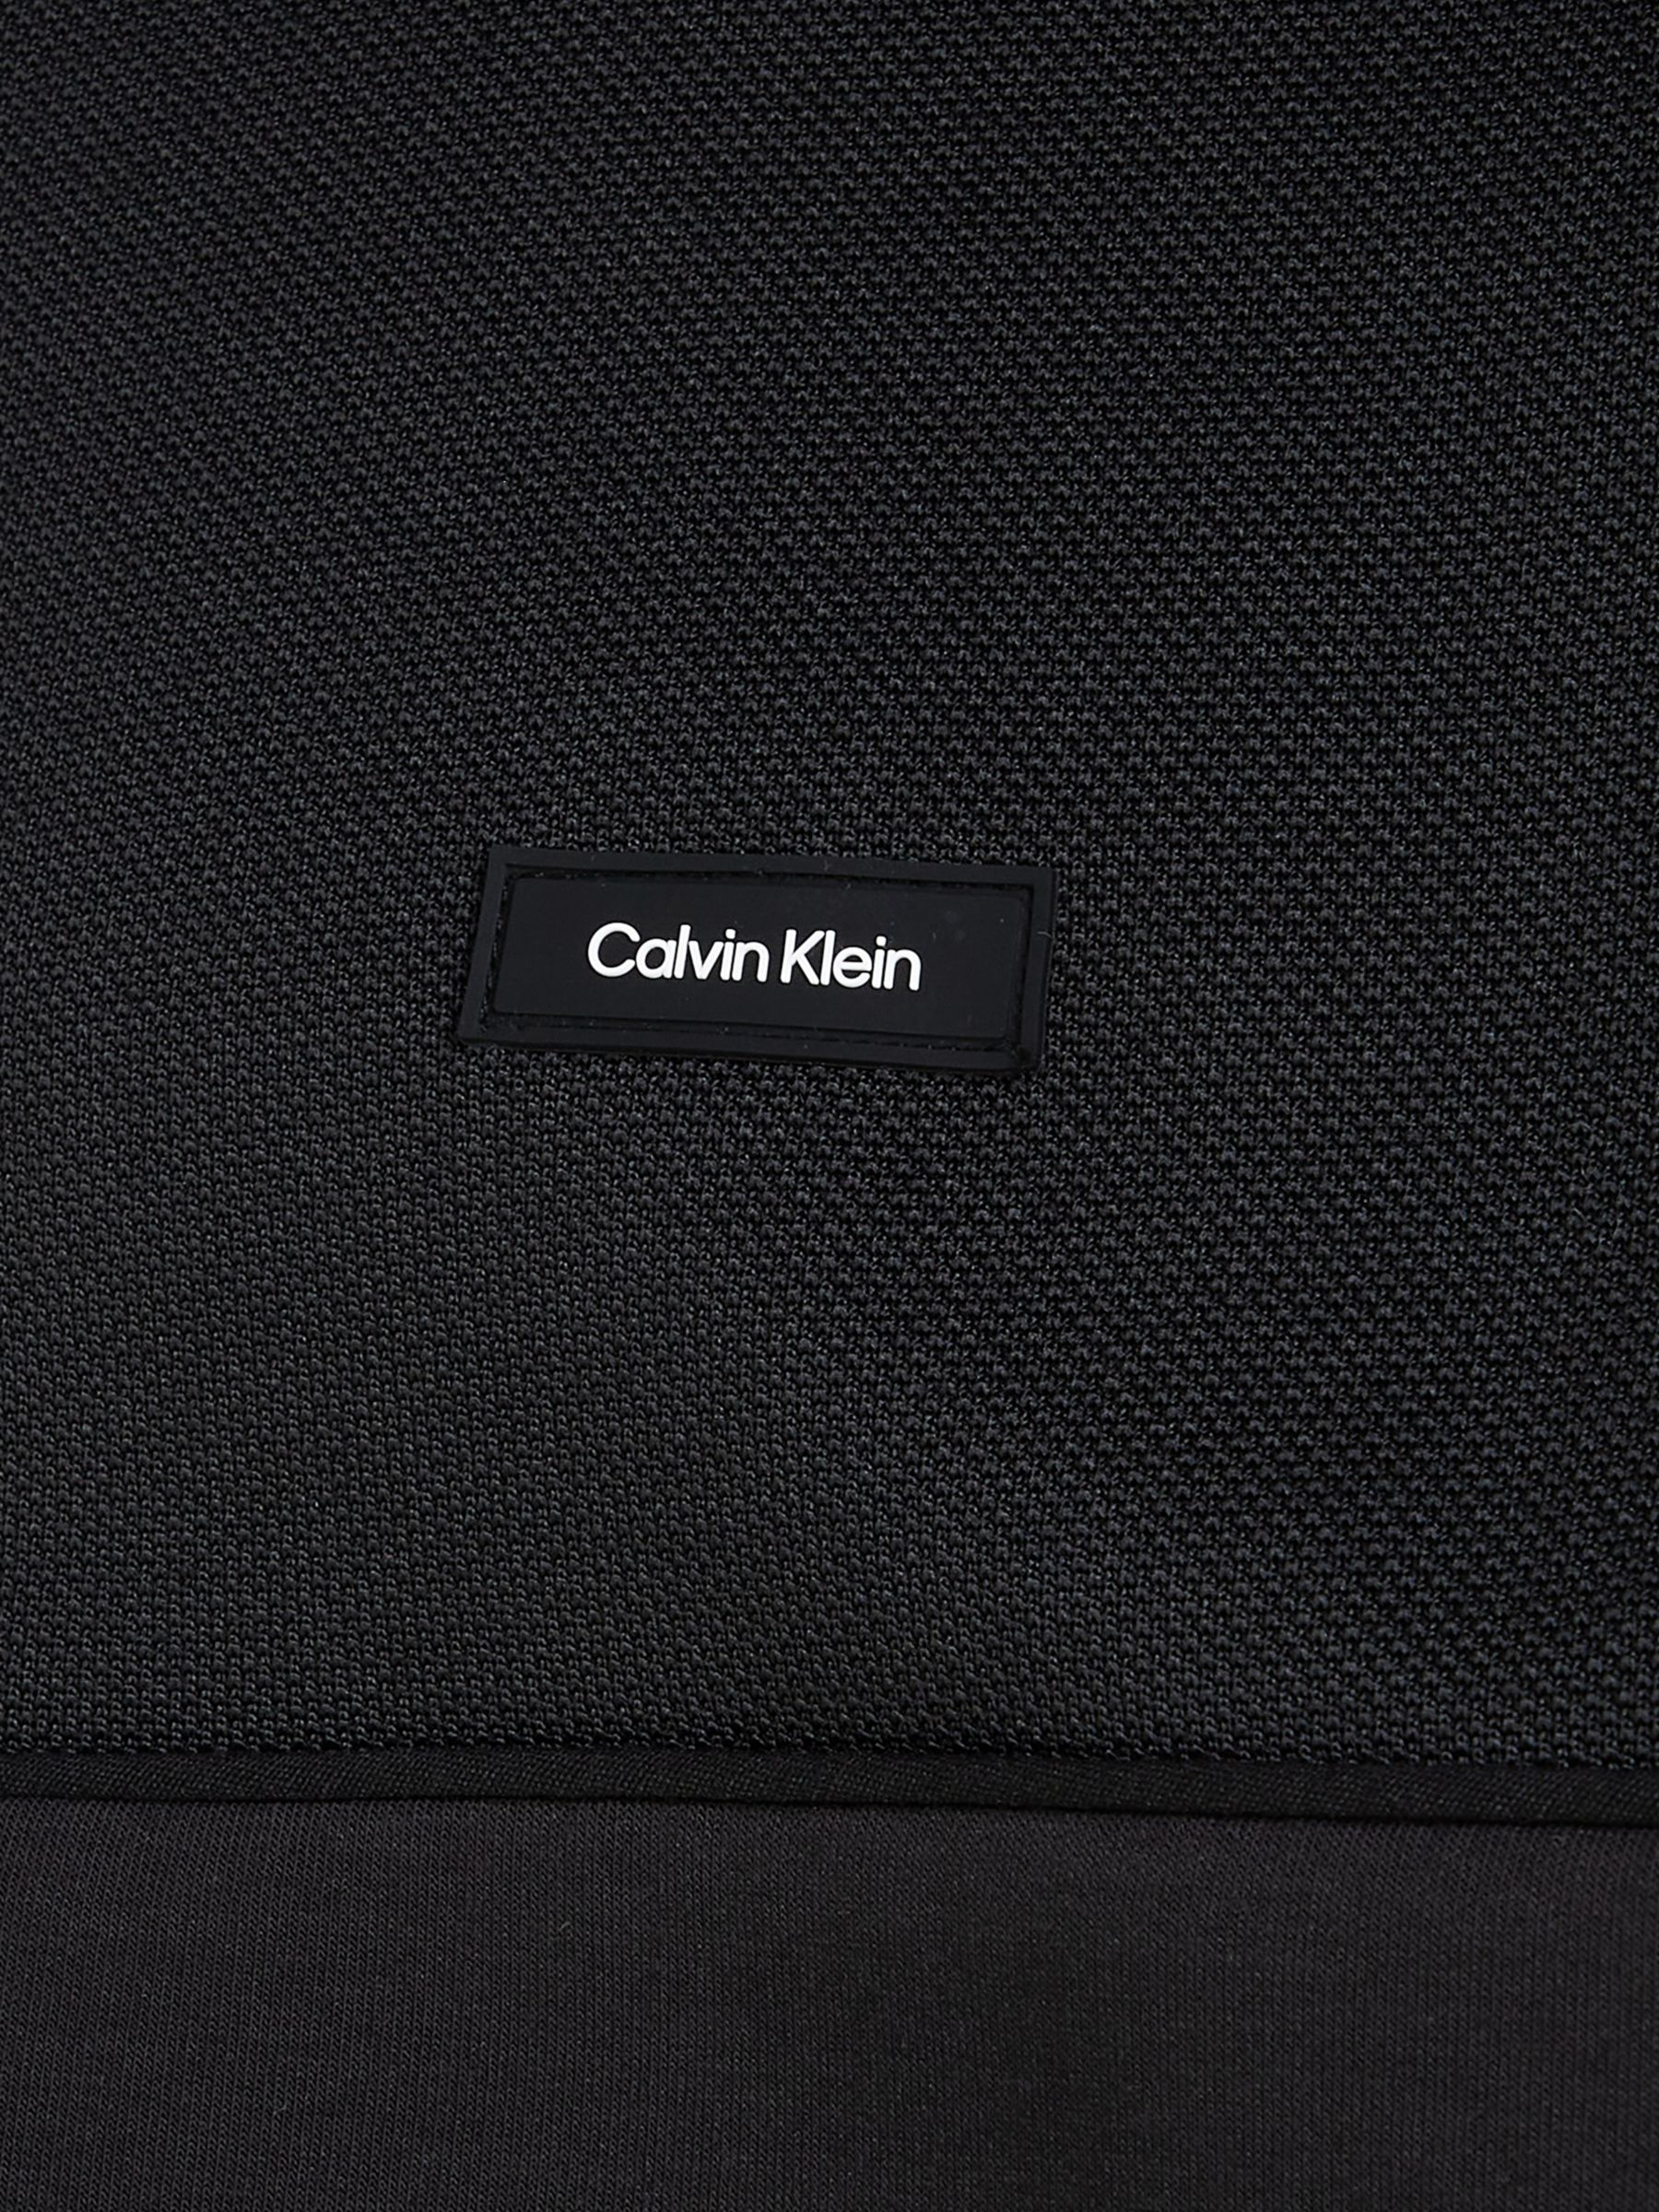 Calvin Klein Mix Media Interlock Zip Through Jumper, Black, L